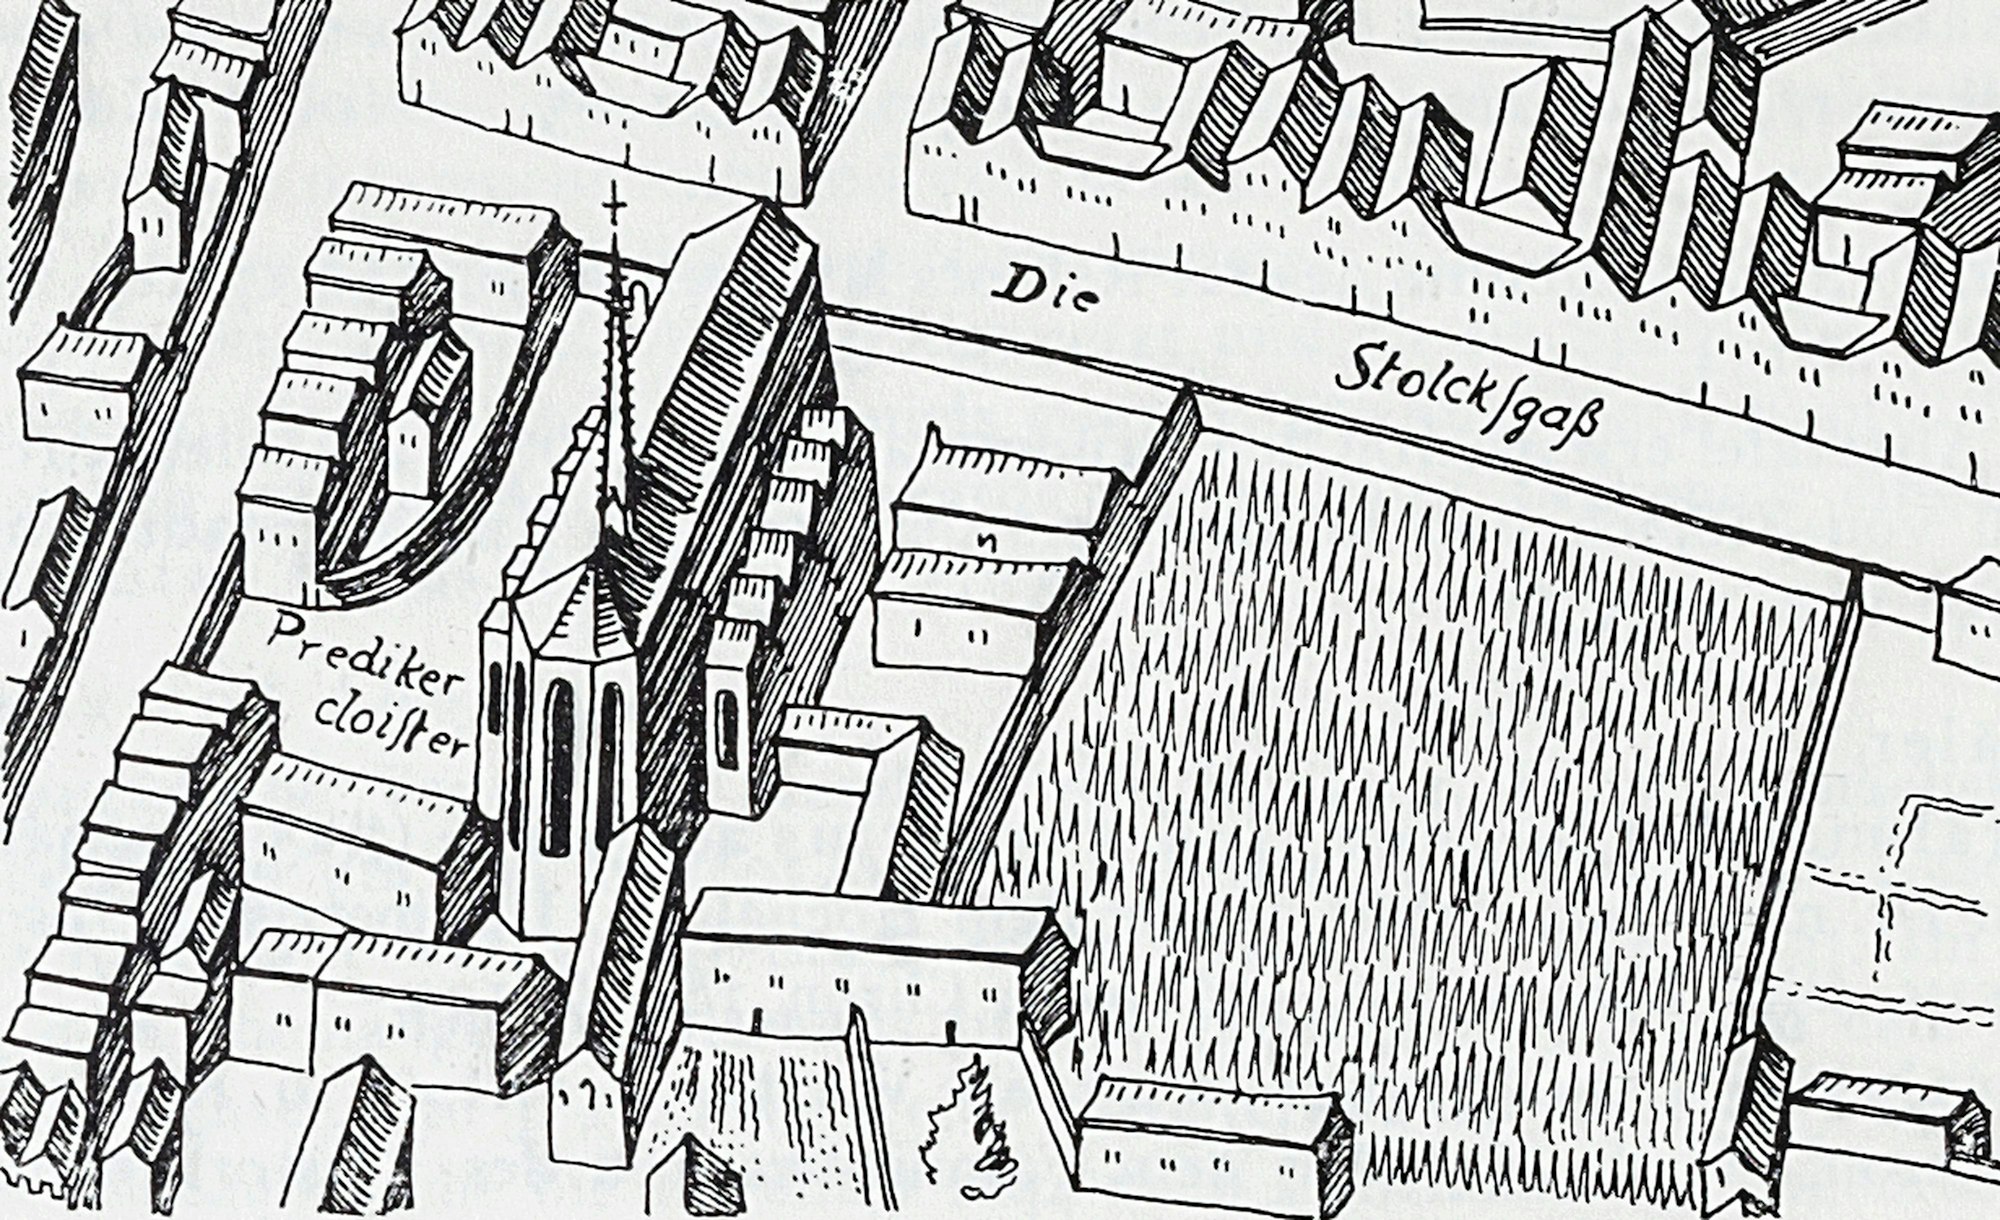 Das Dominikaner-Kloster an der Stolkgasse in der bekannten Mercator-Ansicht der Stadt, eine mit Tusche auf Pergament ausgeführte Darstellung der Stadt in Form eines Stadtplans.